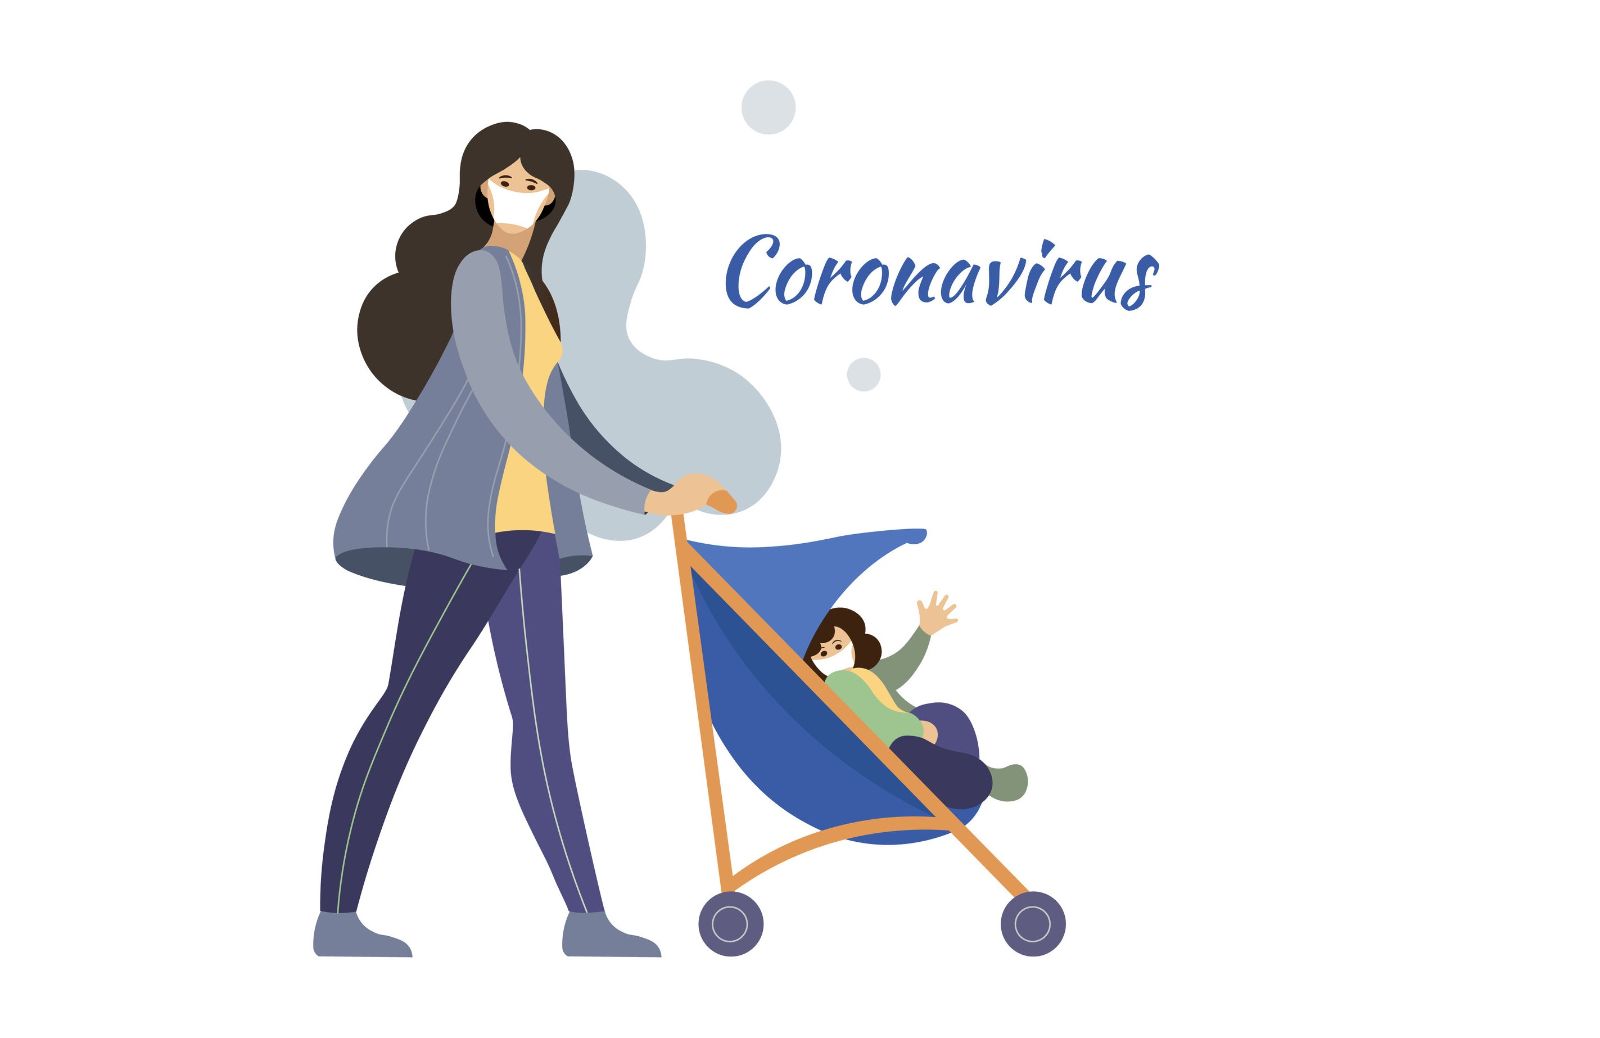 Coronavirus e passeggiate con i bambini: si può fare, ma solo restando vicini a casa